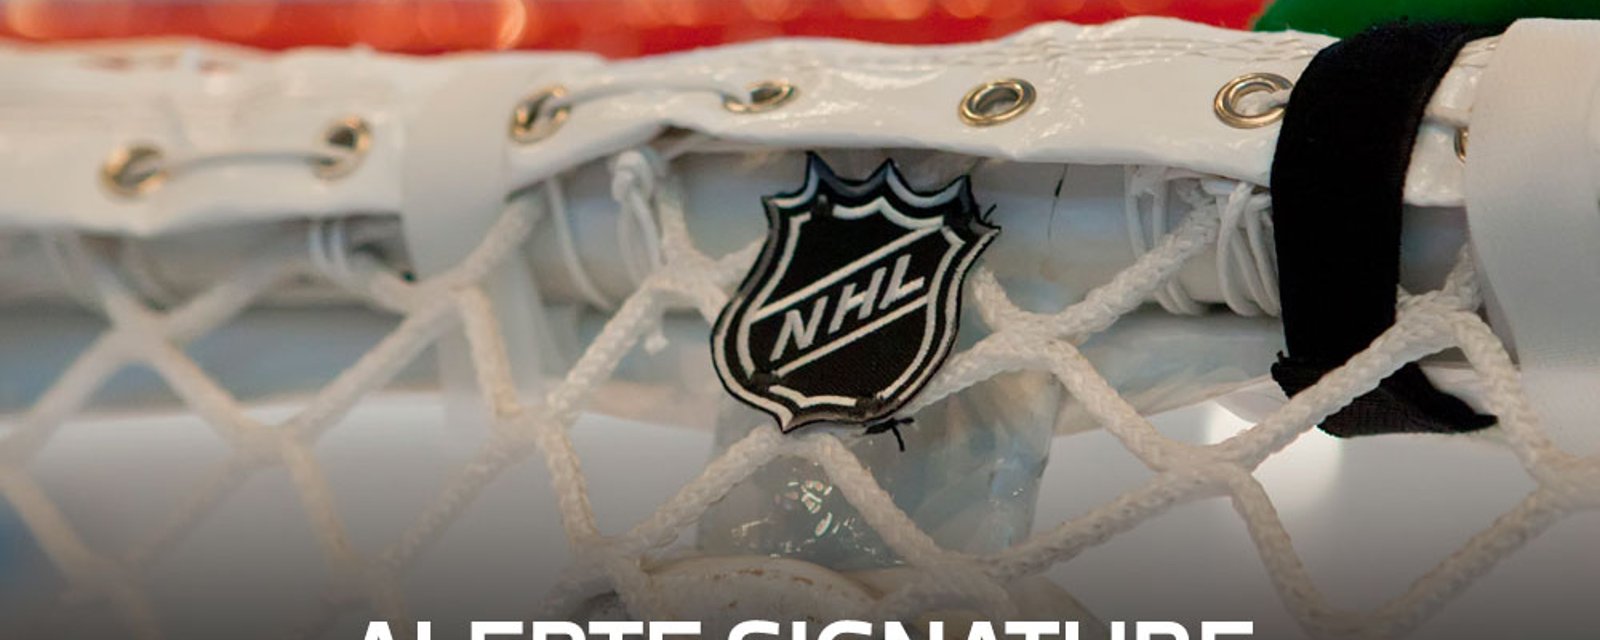 Alerte signature: Une cible des Canadiens signe un nouveau contrat!